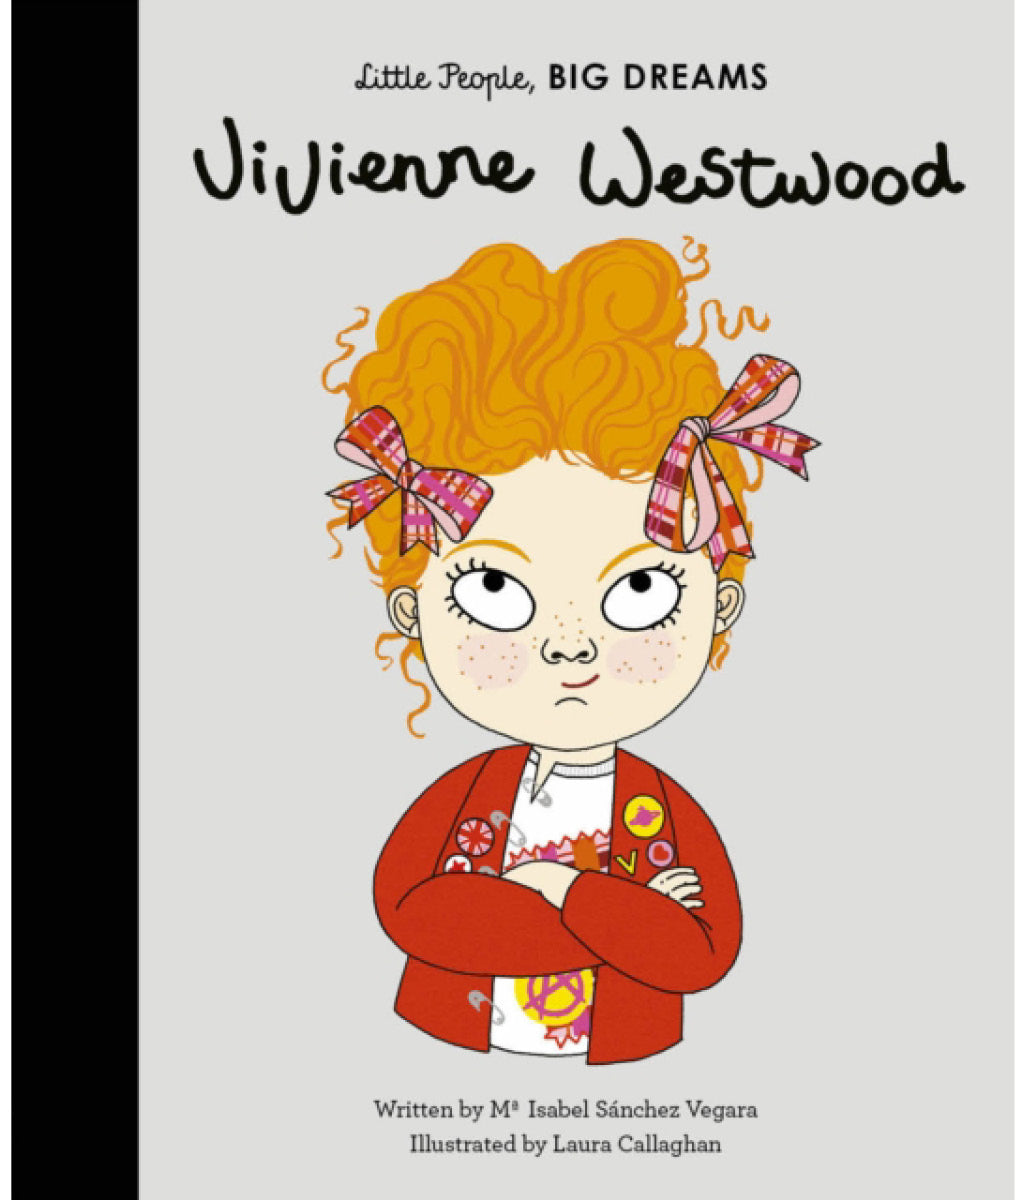 Vivienne Westwood by Maria Isabel Sanchez Vegara